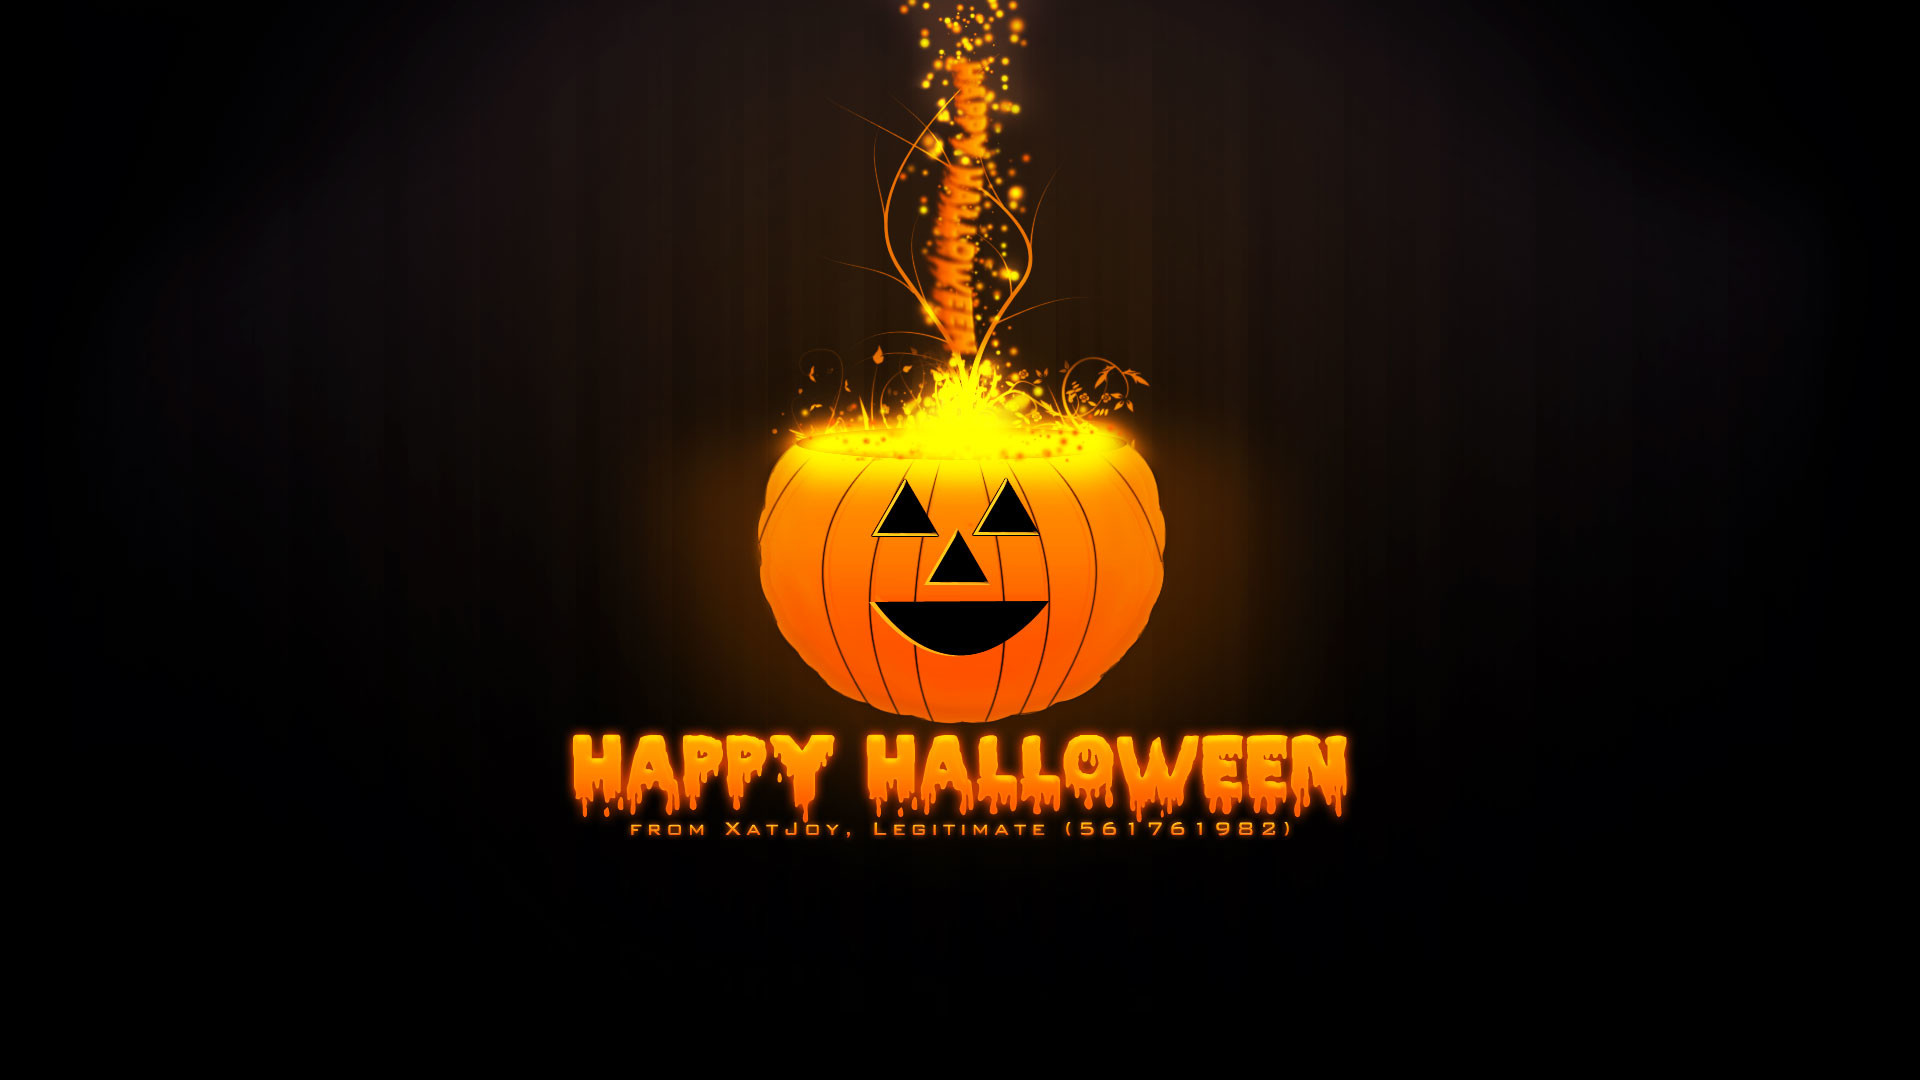 Funny Halloween halloween crazy HD wallpaper  Pxfuel